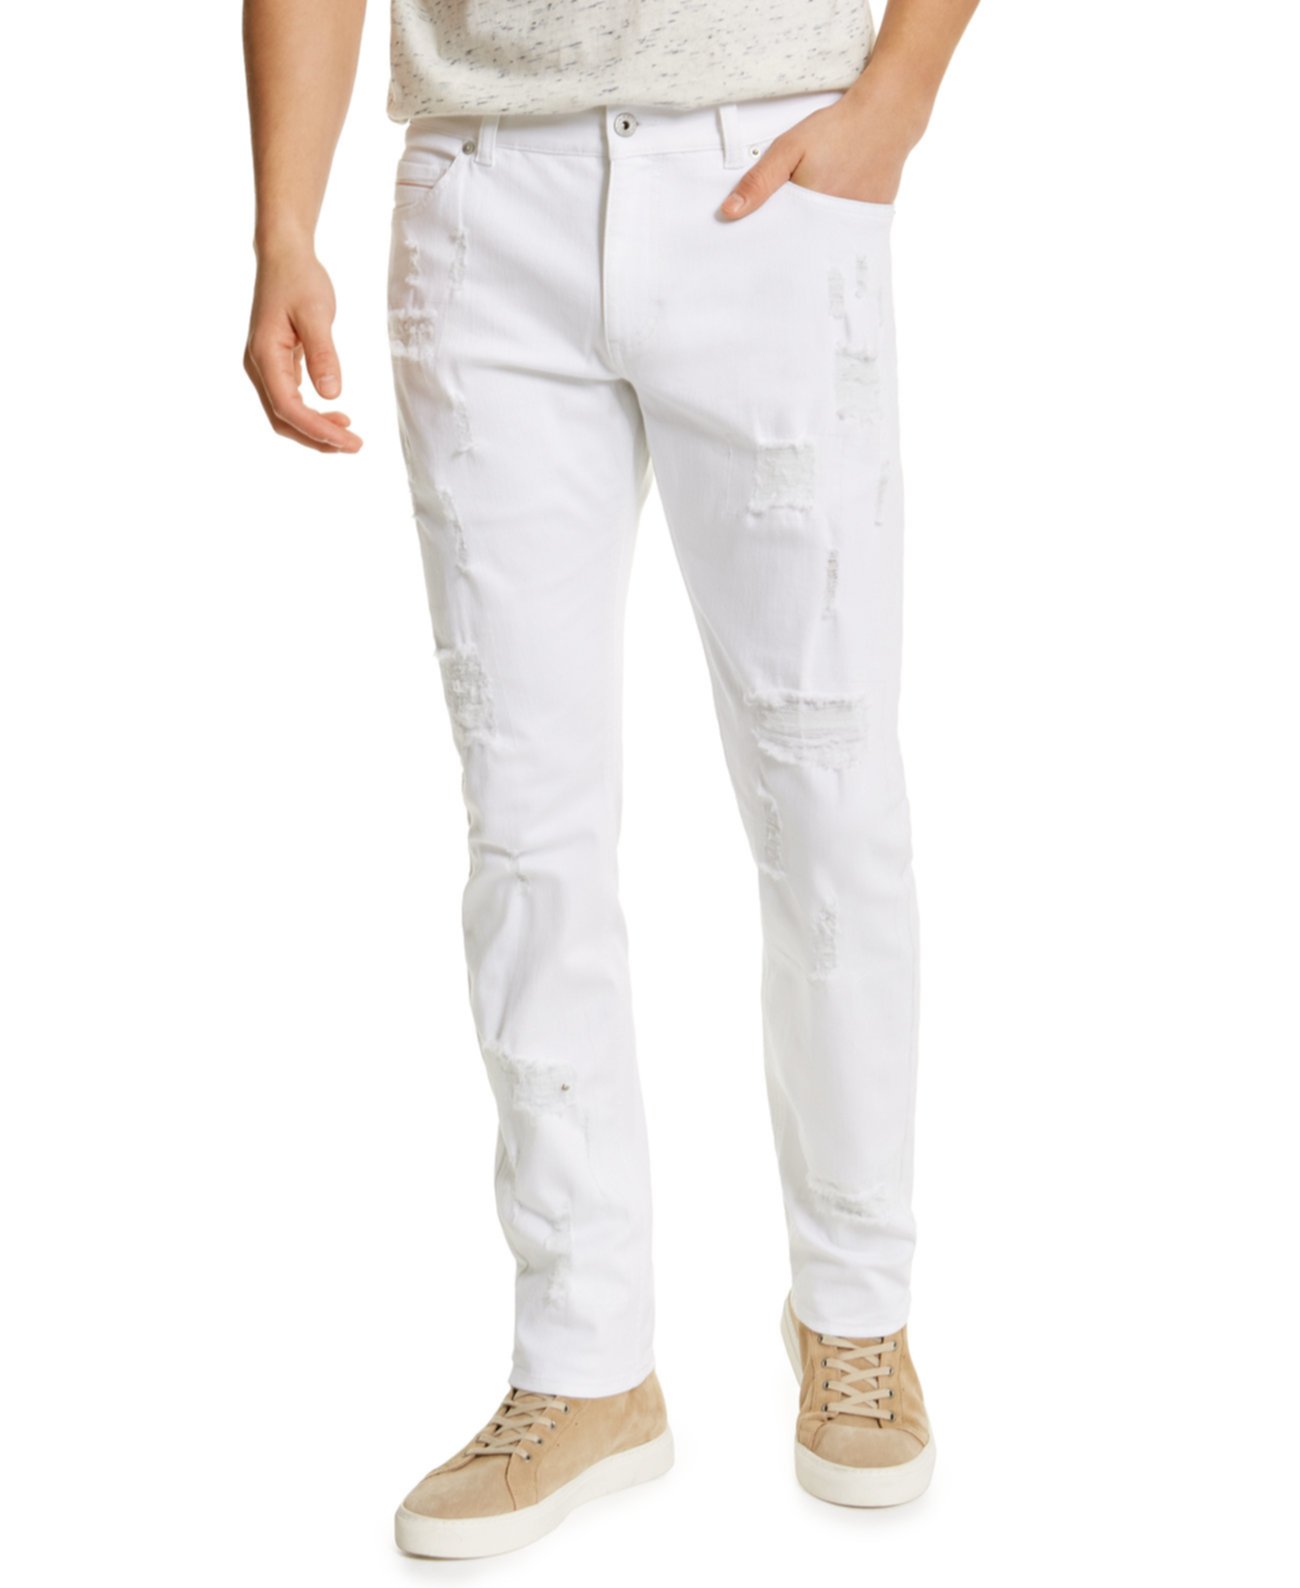 Мужские рваные белые джинсы с рециркулированным рисунком, созданные для Macy's Sun & Stone